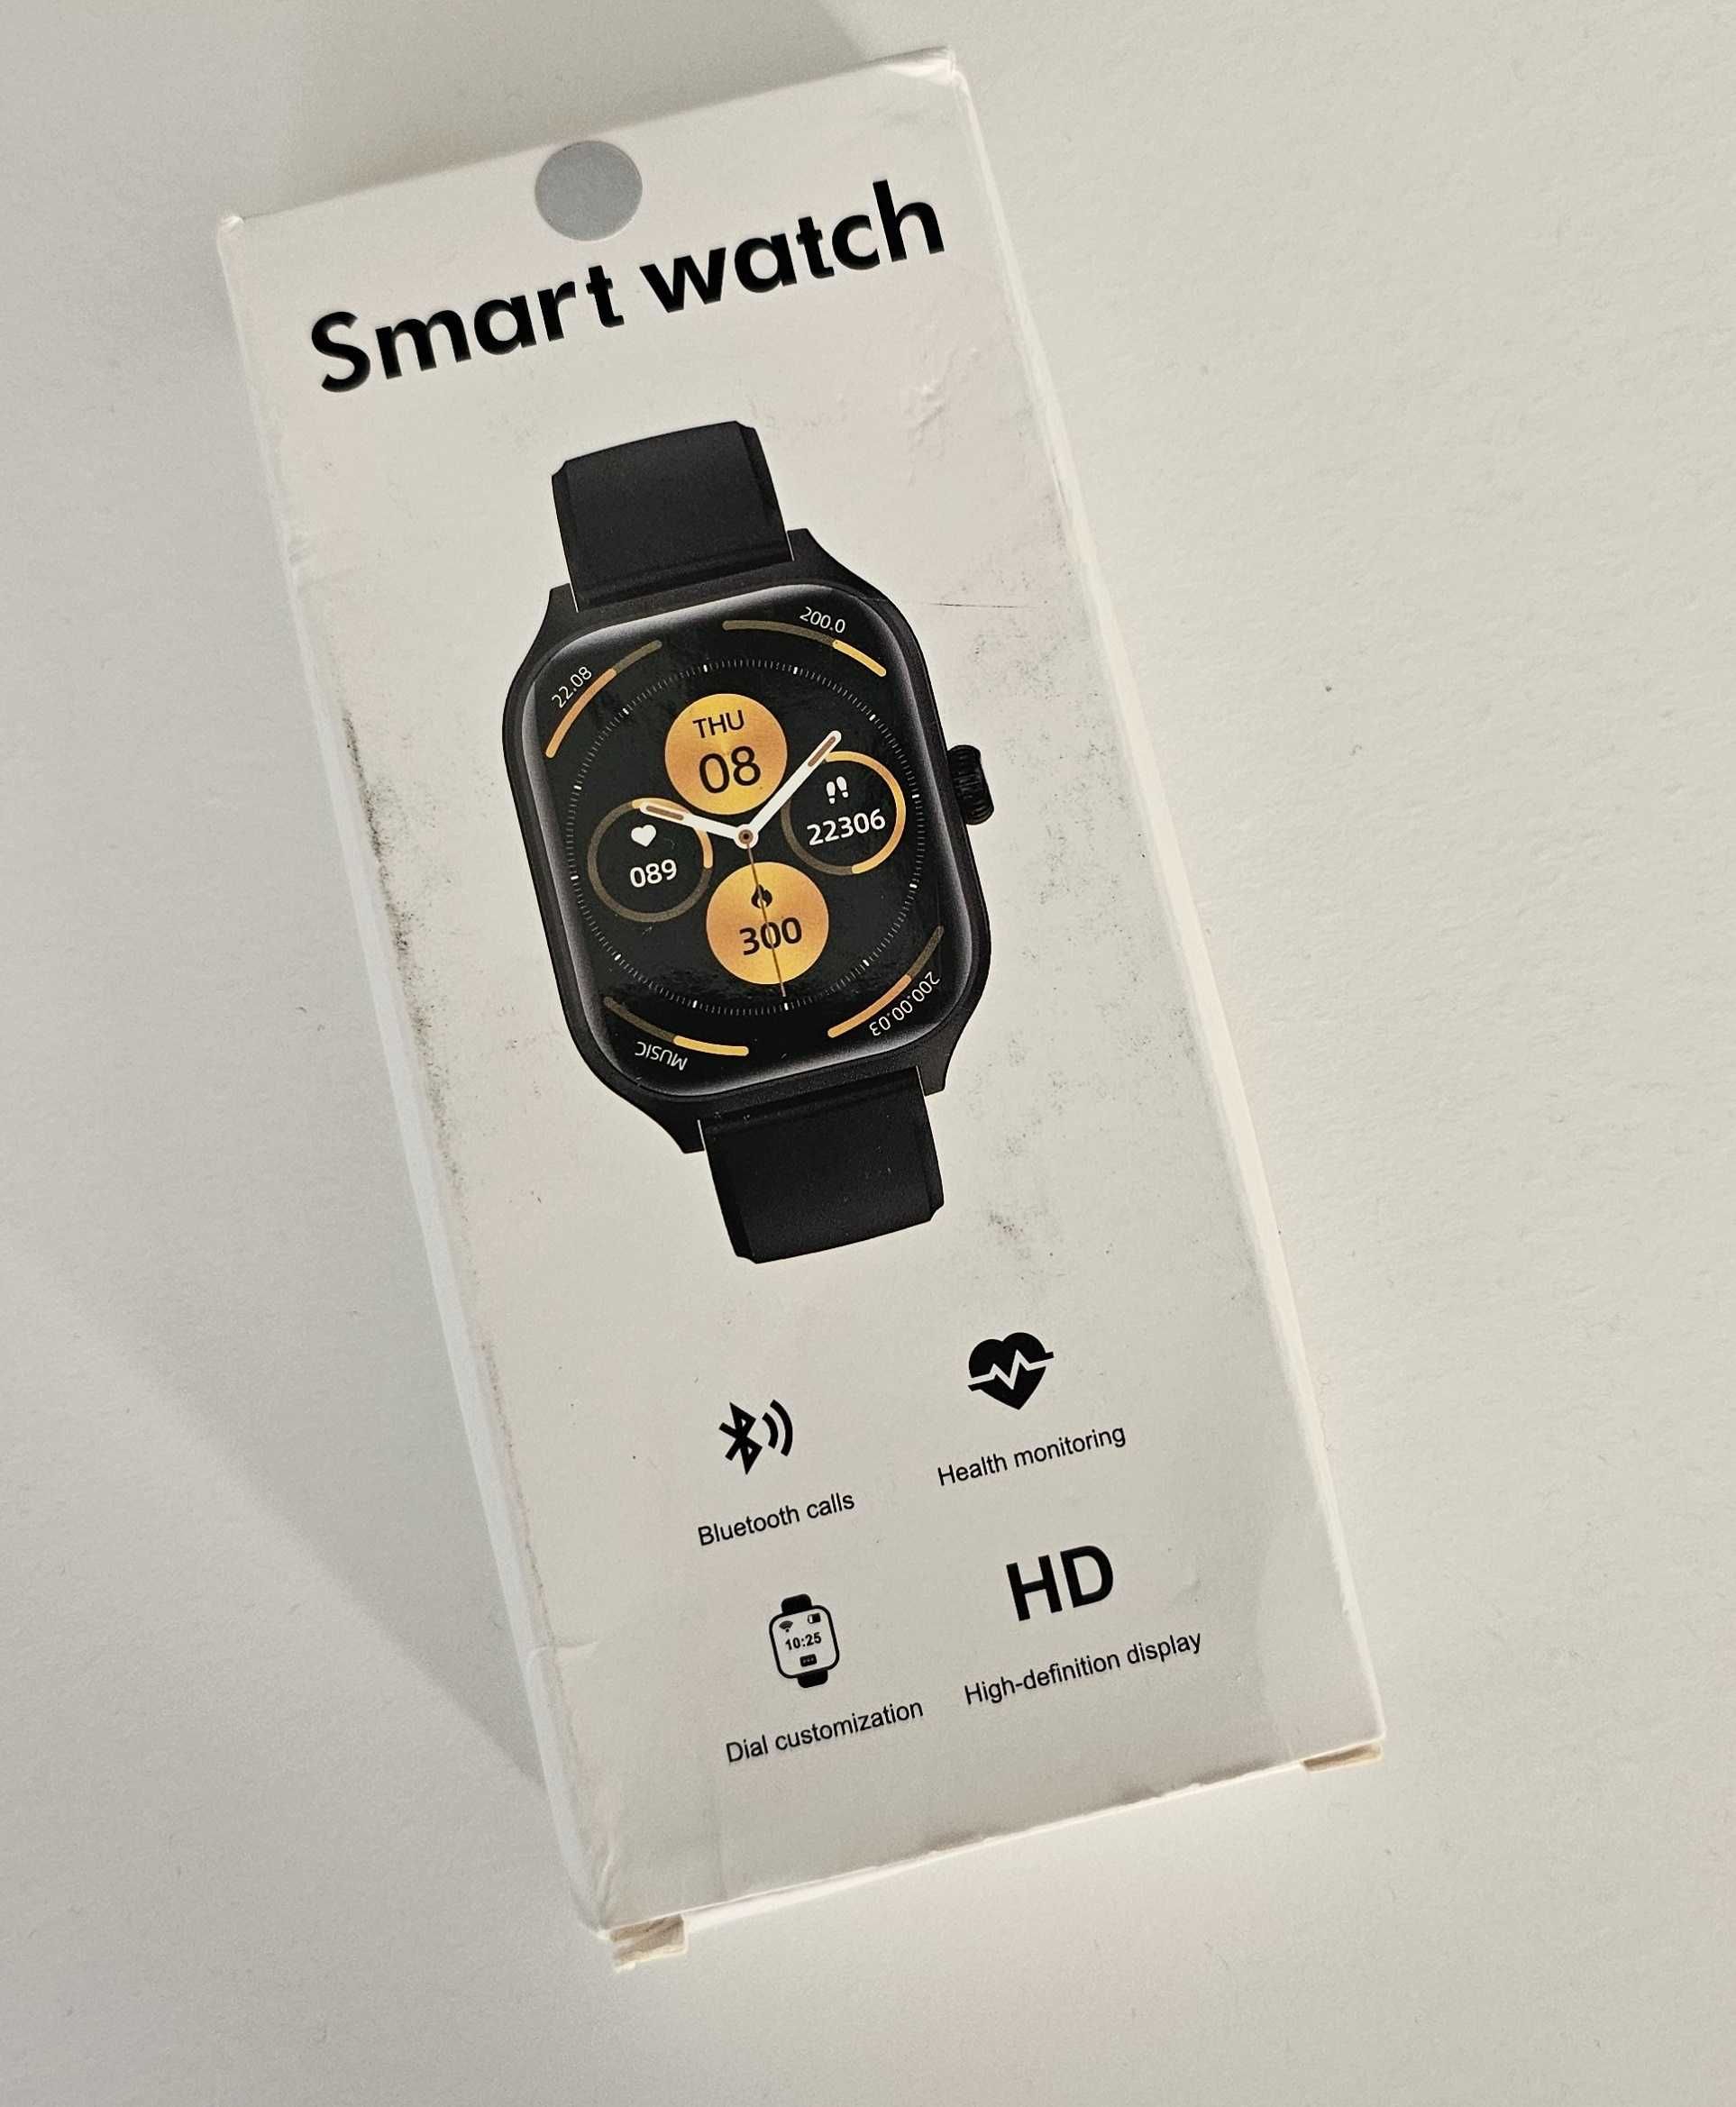 Zegarek Smartwatch smart duży 2.01 kwadratowa koperta silver szary